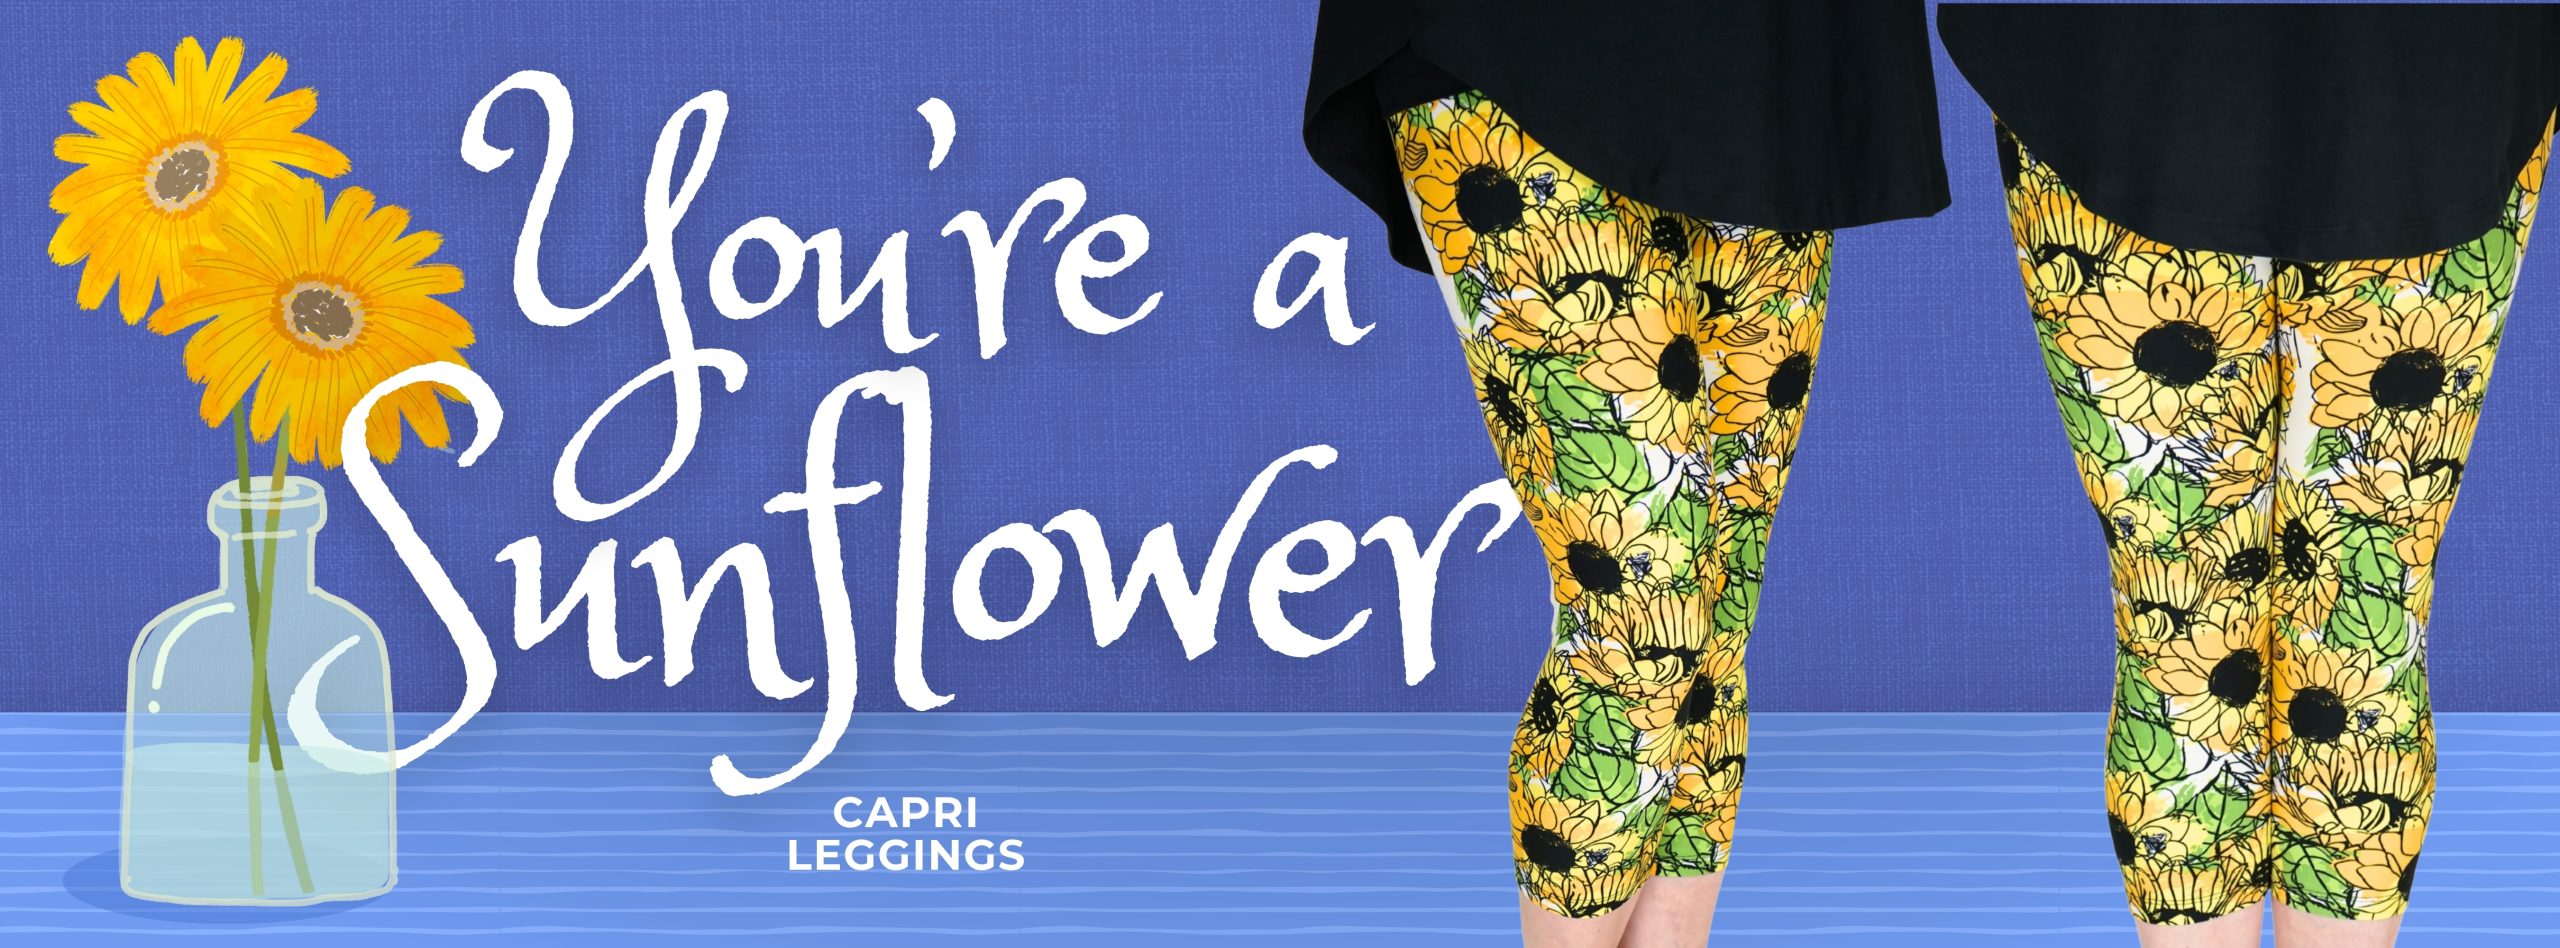 New She's Got Leggz capri leggings called "You're a Sunflower"